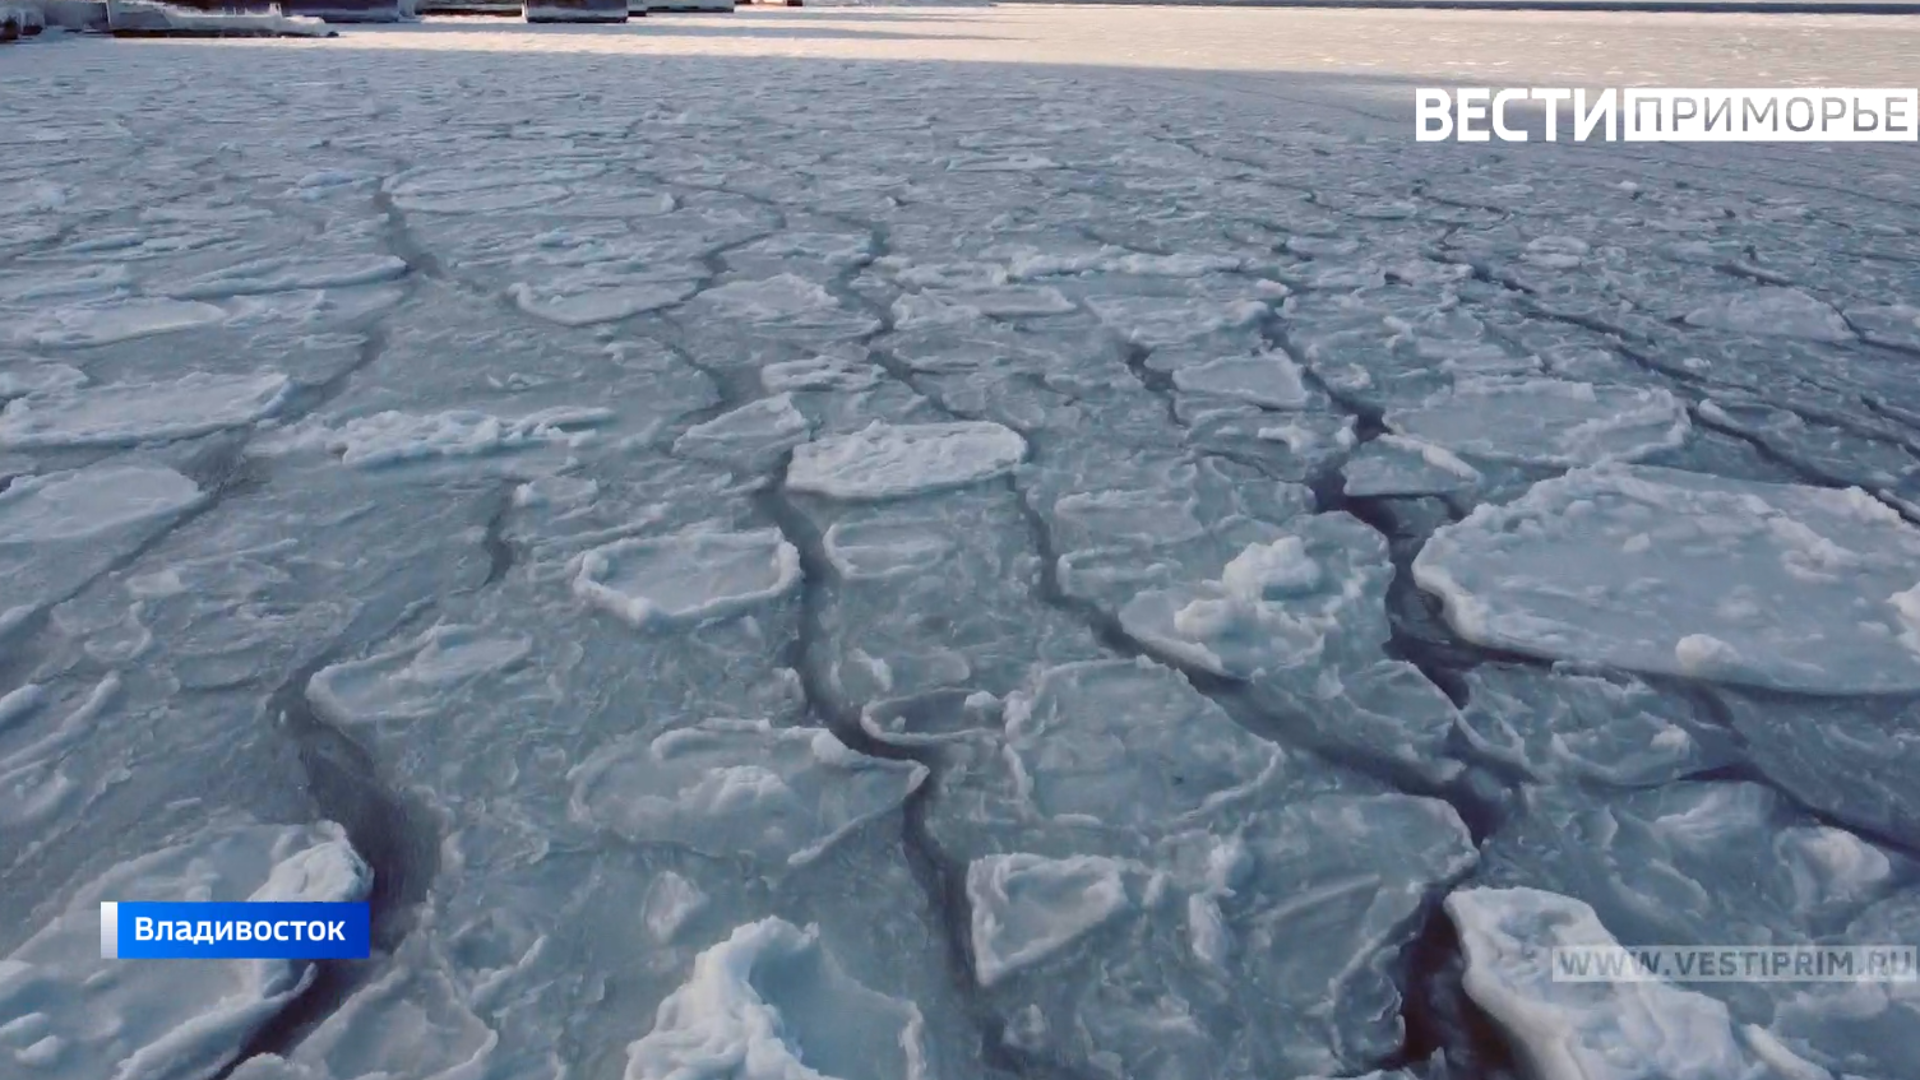 滨海边疆区的居民在寒冷中进行了大规模的浸泡，并在冰雪中游泳